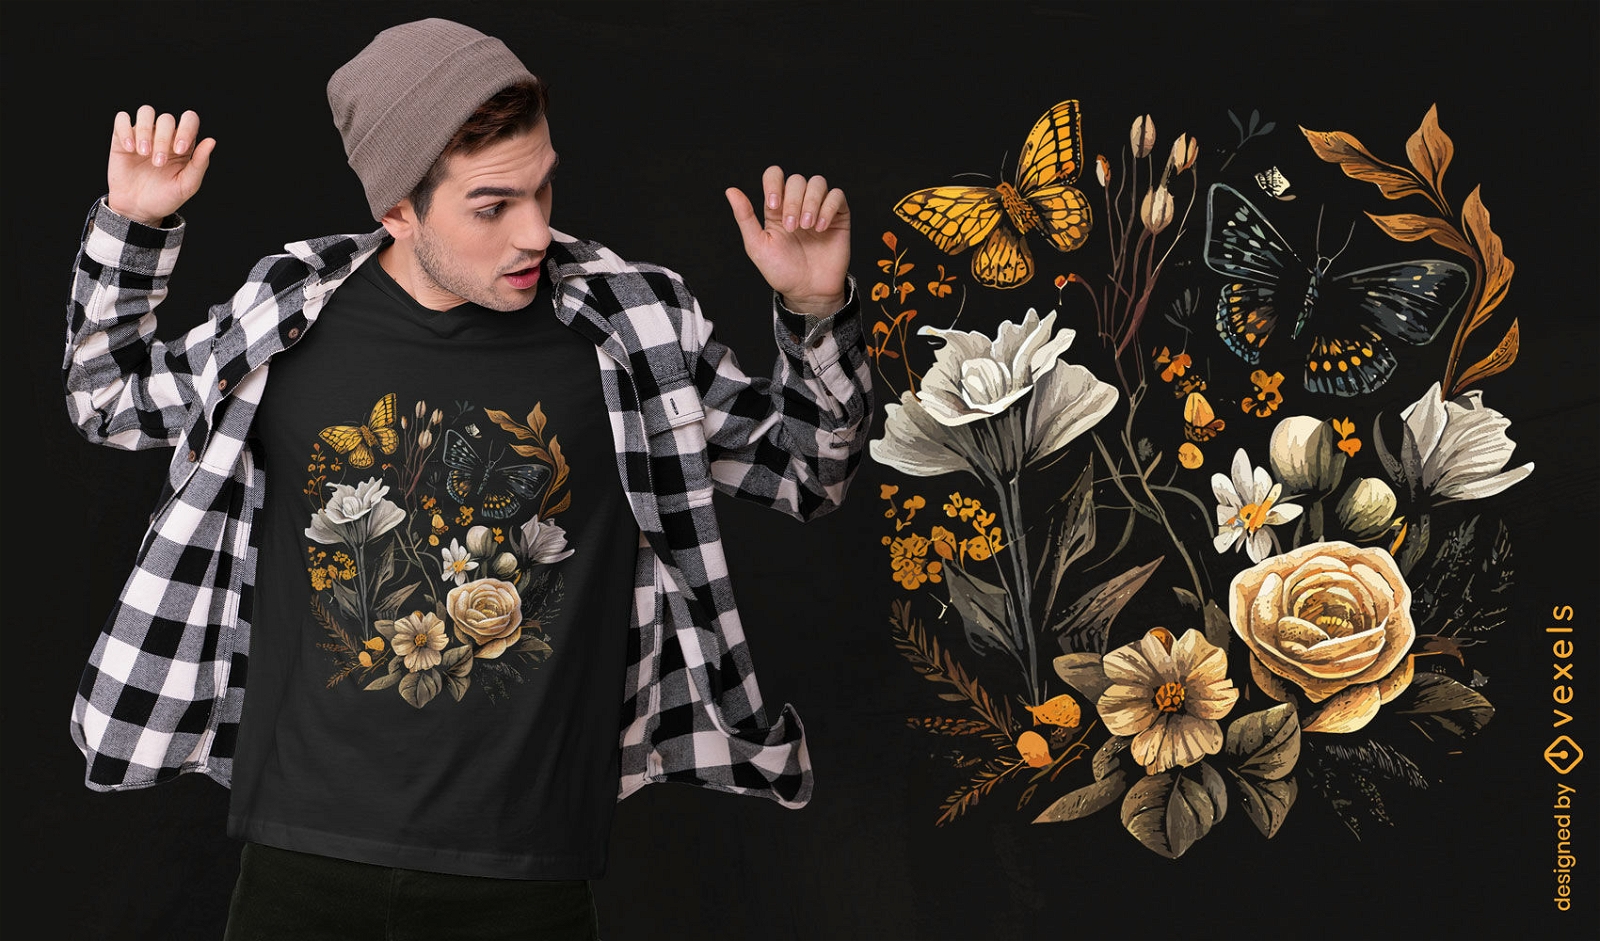 Realistisches botanisches T-Shirt-Design mit Blumen